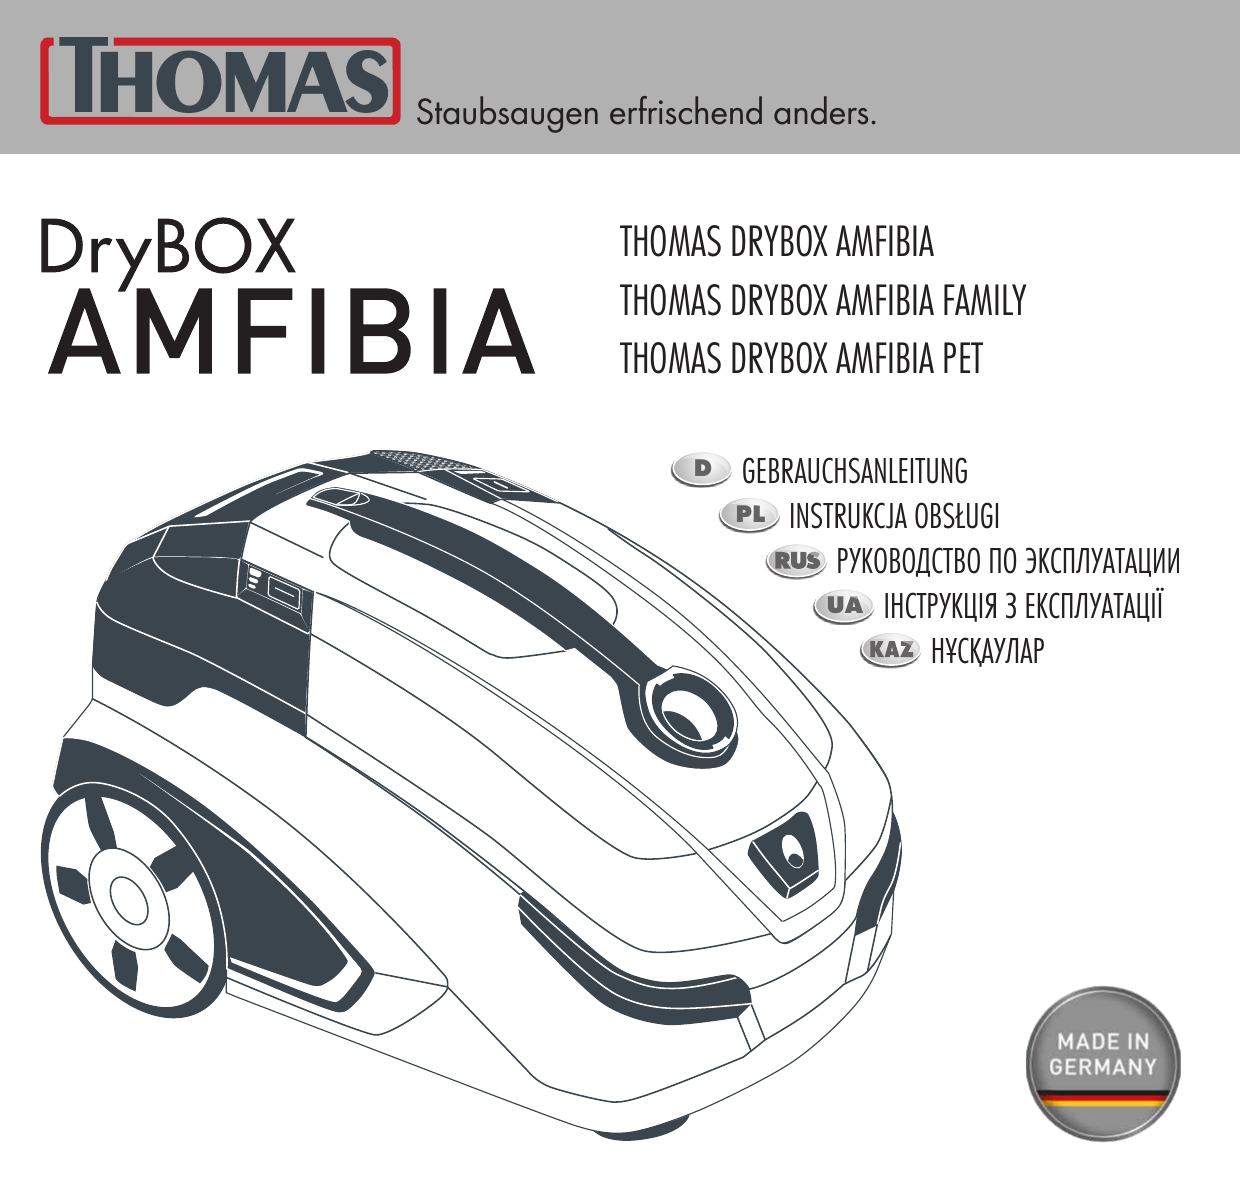 788598 drybox amfibia pet. Thomas 788598 DRYBOX Amfibia Pet. Thomas 788599 DRYBOX Amfibia Family. Thomas DRYBOX Amfibia инструкция. Пылесос Thomas Amfibia инструкция.